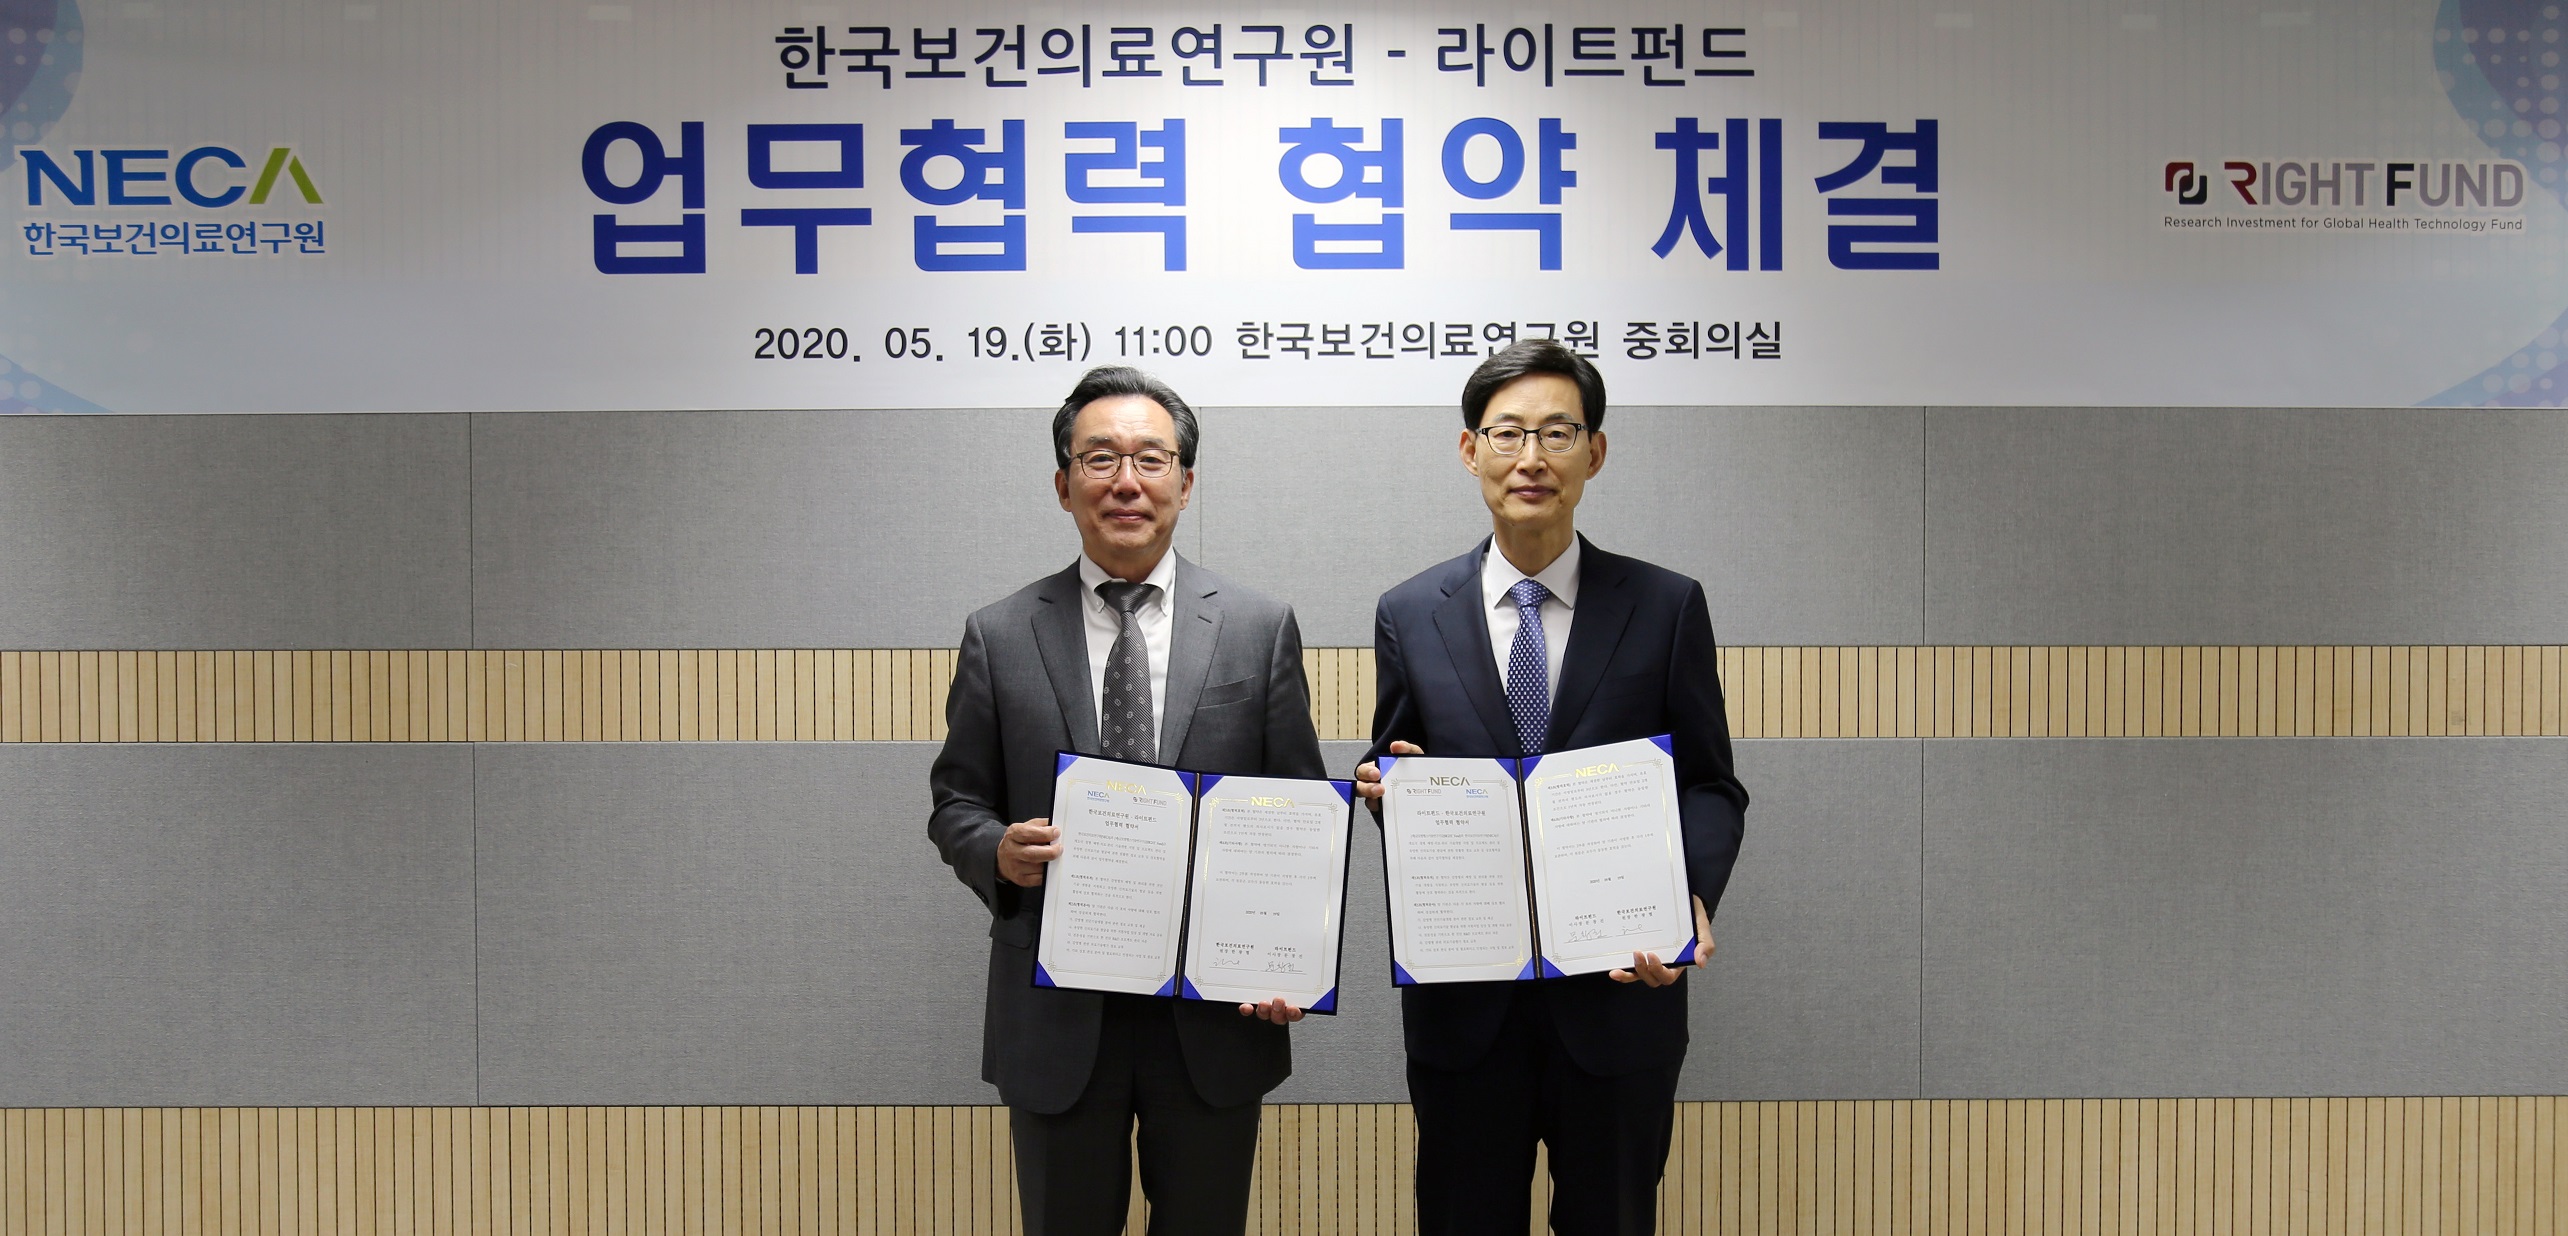 한국보건의료연구원-라이트펀드 업무협력협약 체결